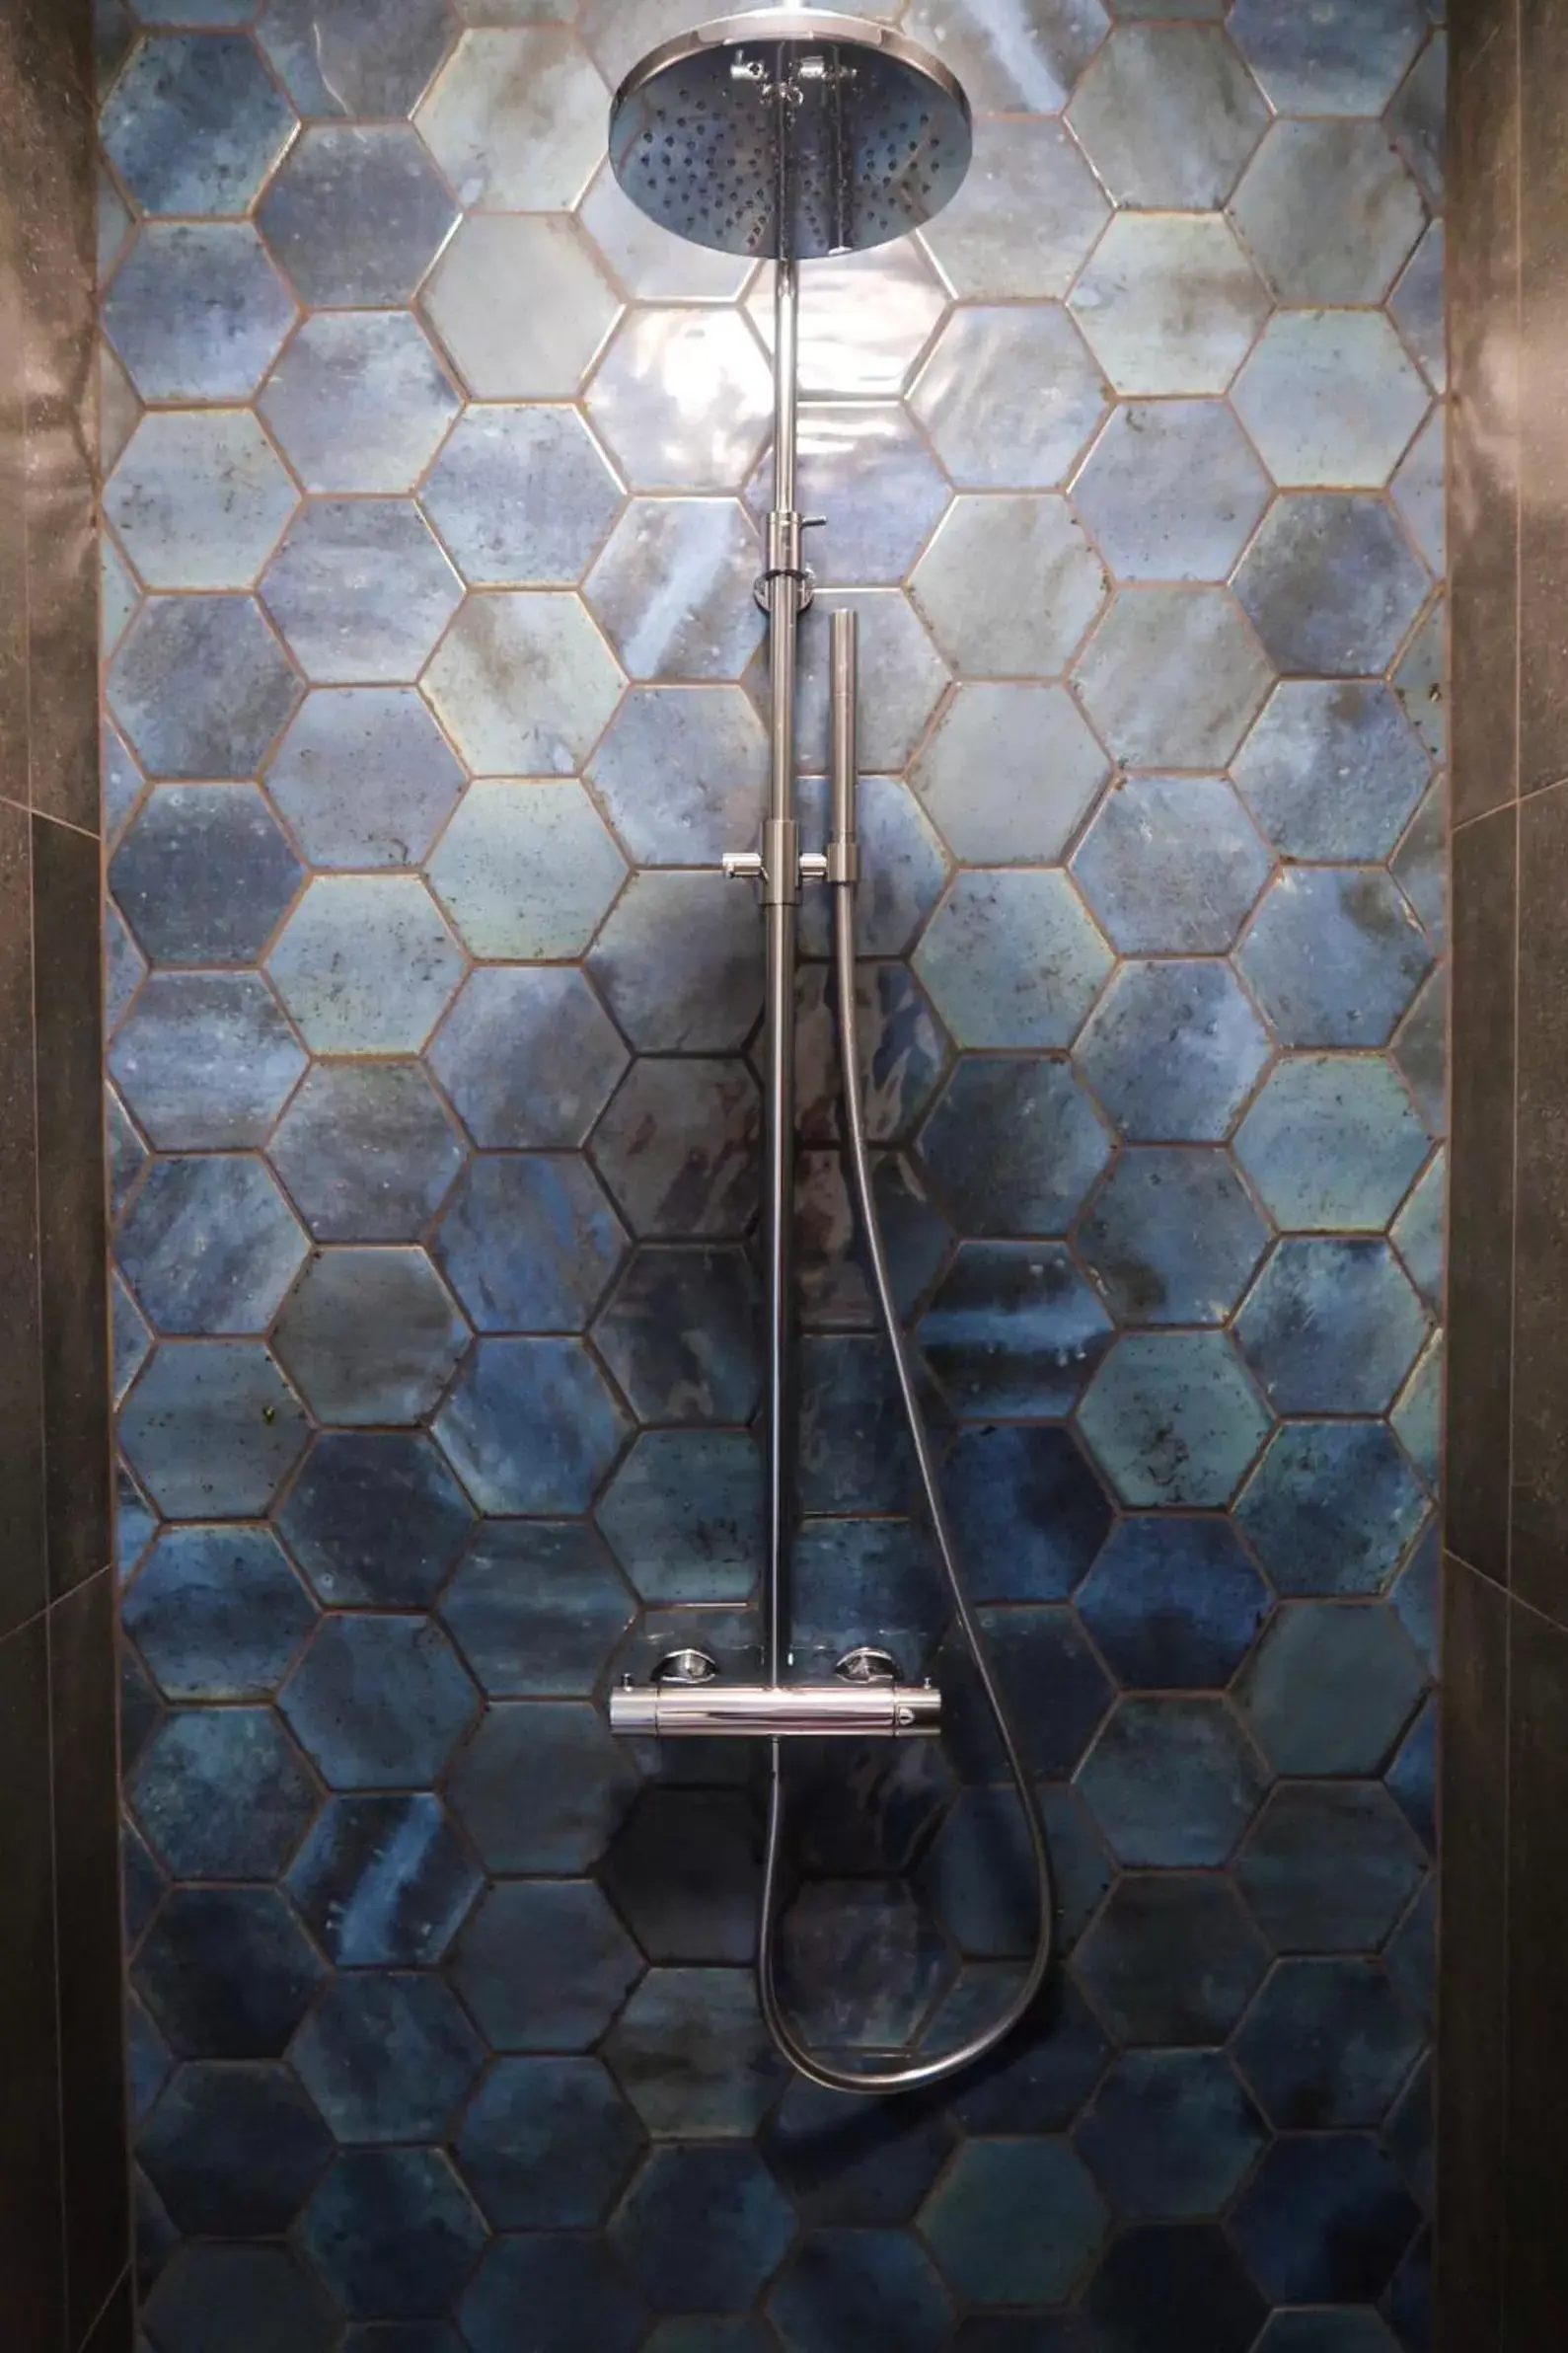 Shower, Bathroom in KeizersgrachtSuite471